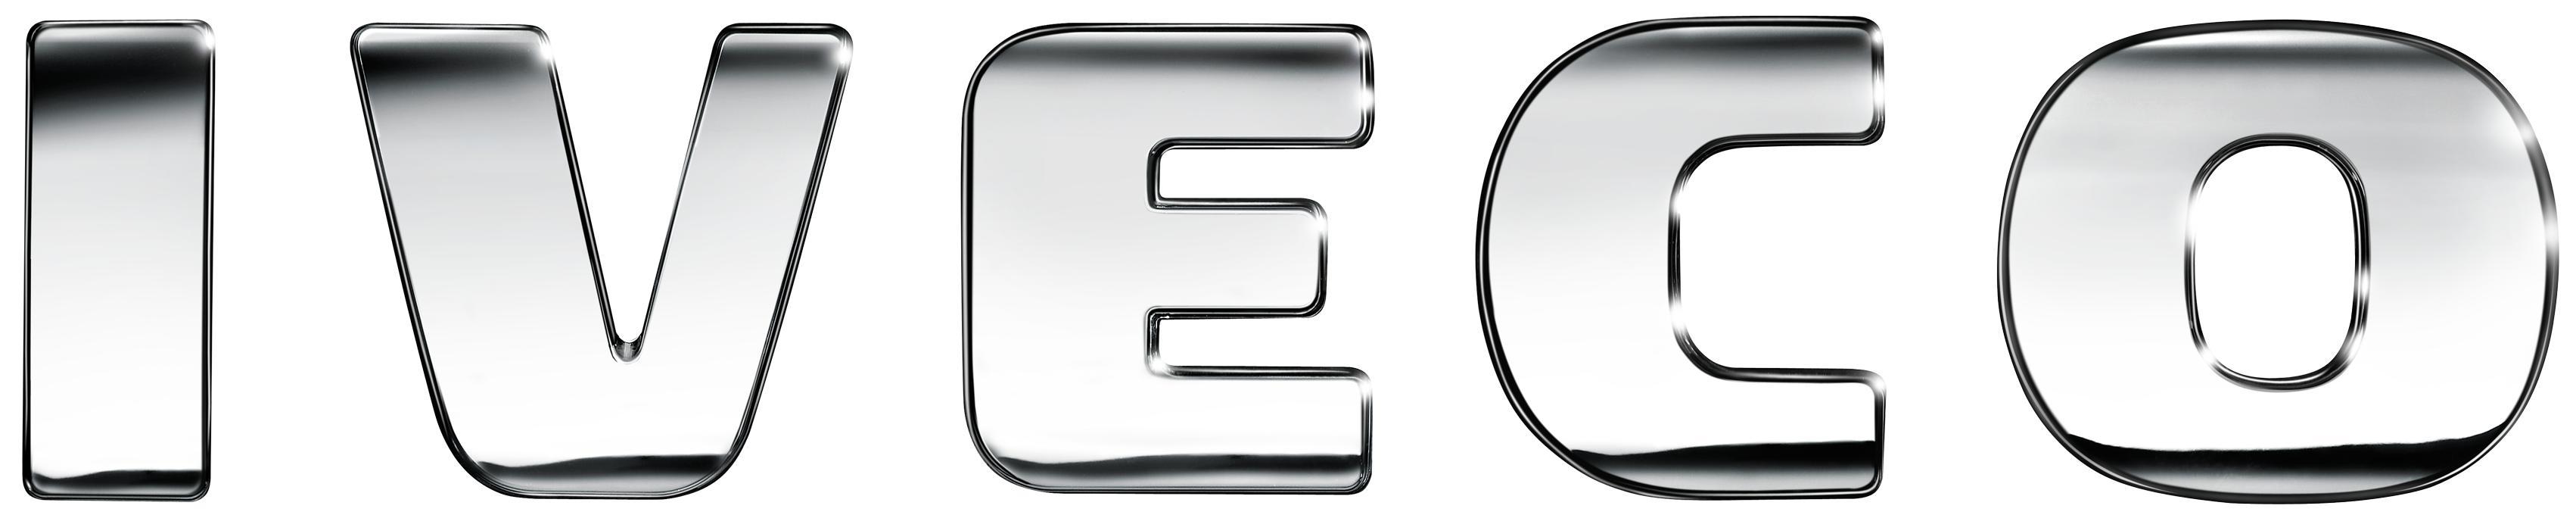 Iveco Logo - Iveco Logo Vector Free Download